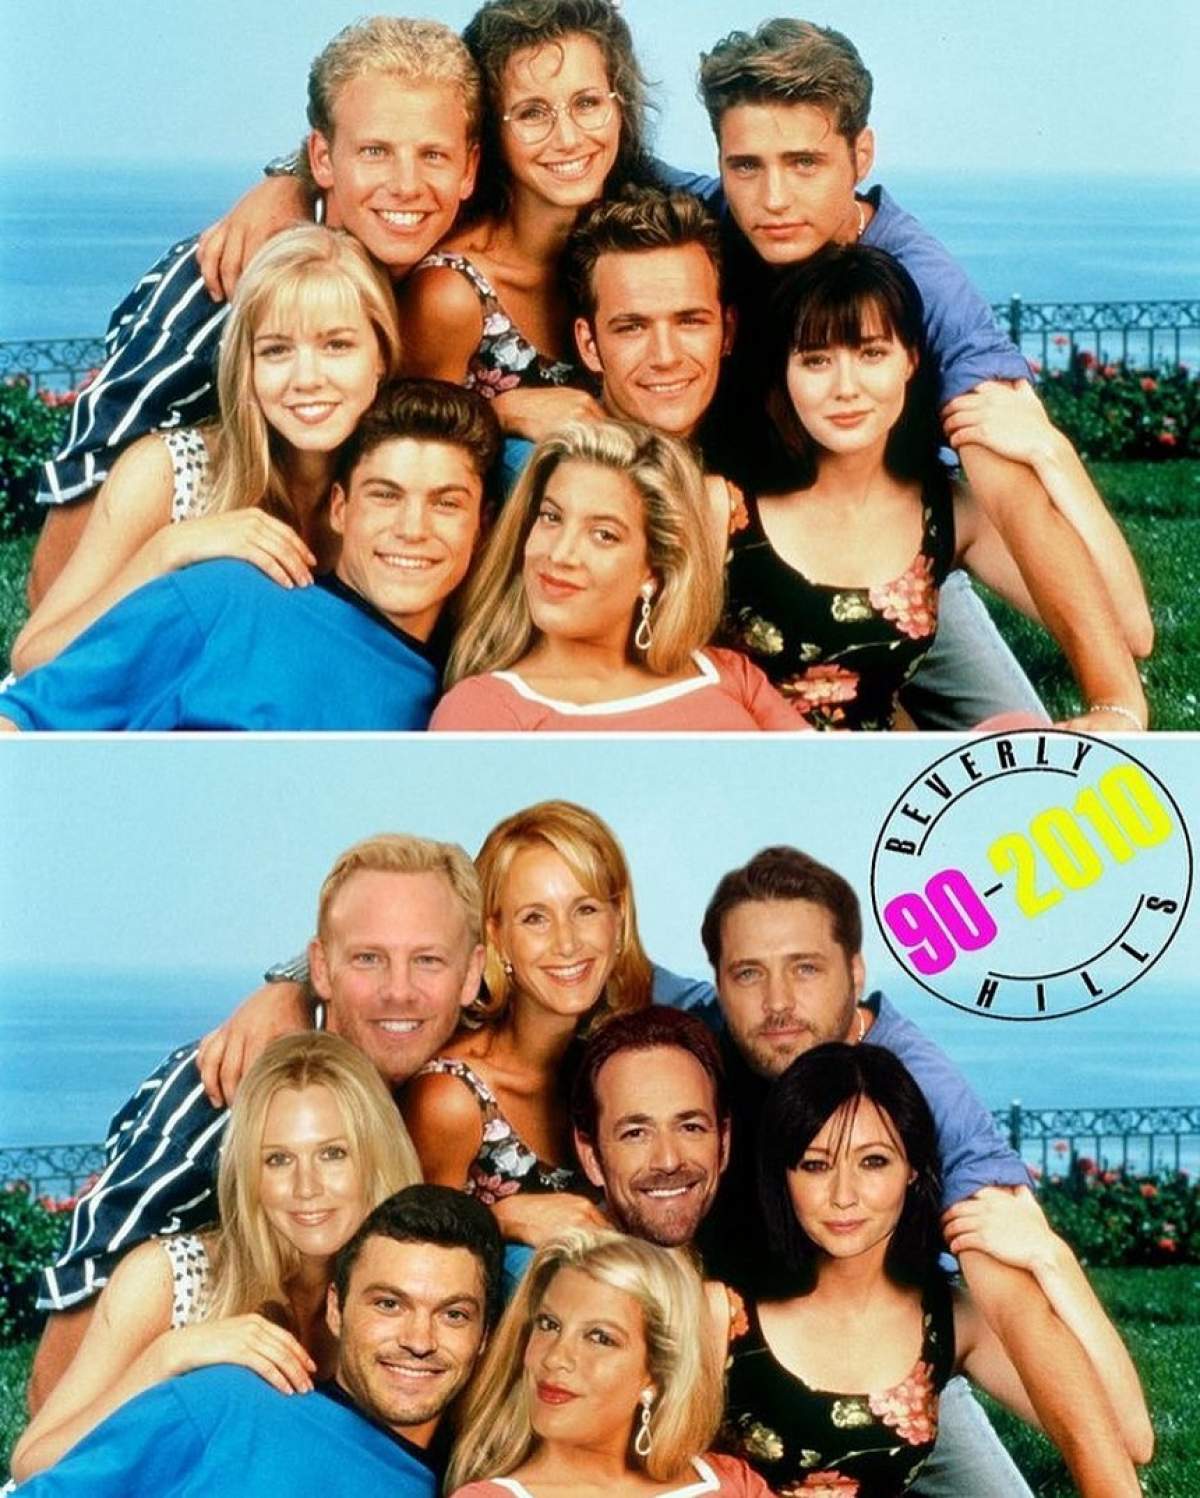 Vești bune pentru iubitorii de film! Celebrul serial Beverly Hills 90210 confirmă revenirea cu actori din producția originală / VIDEO